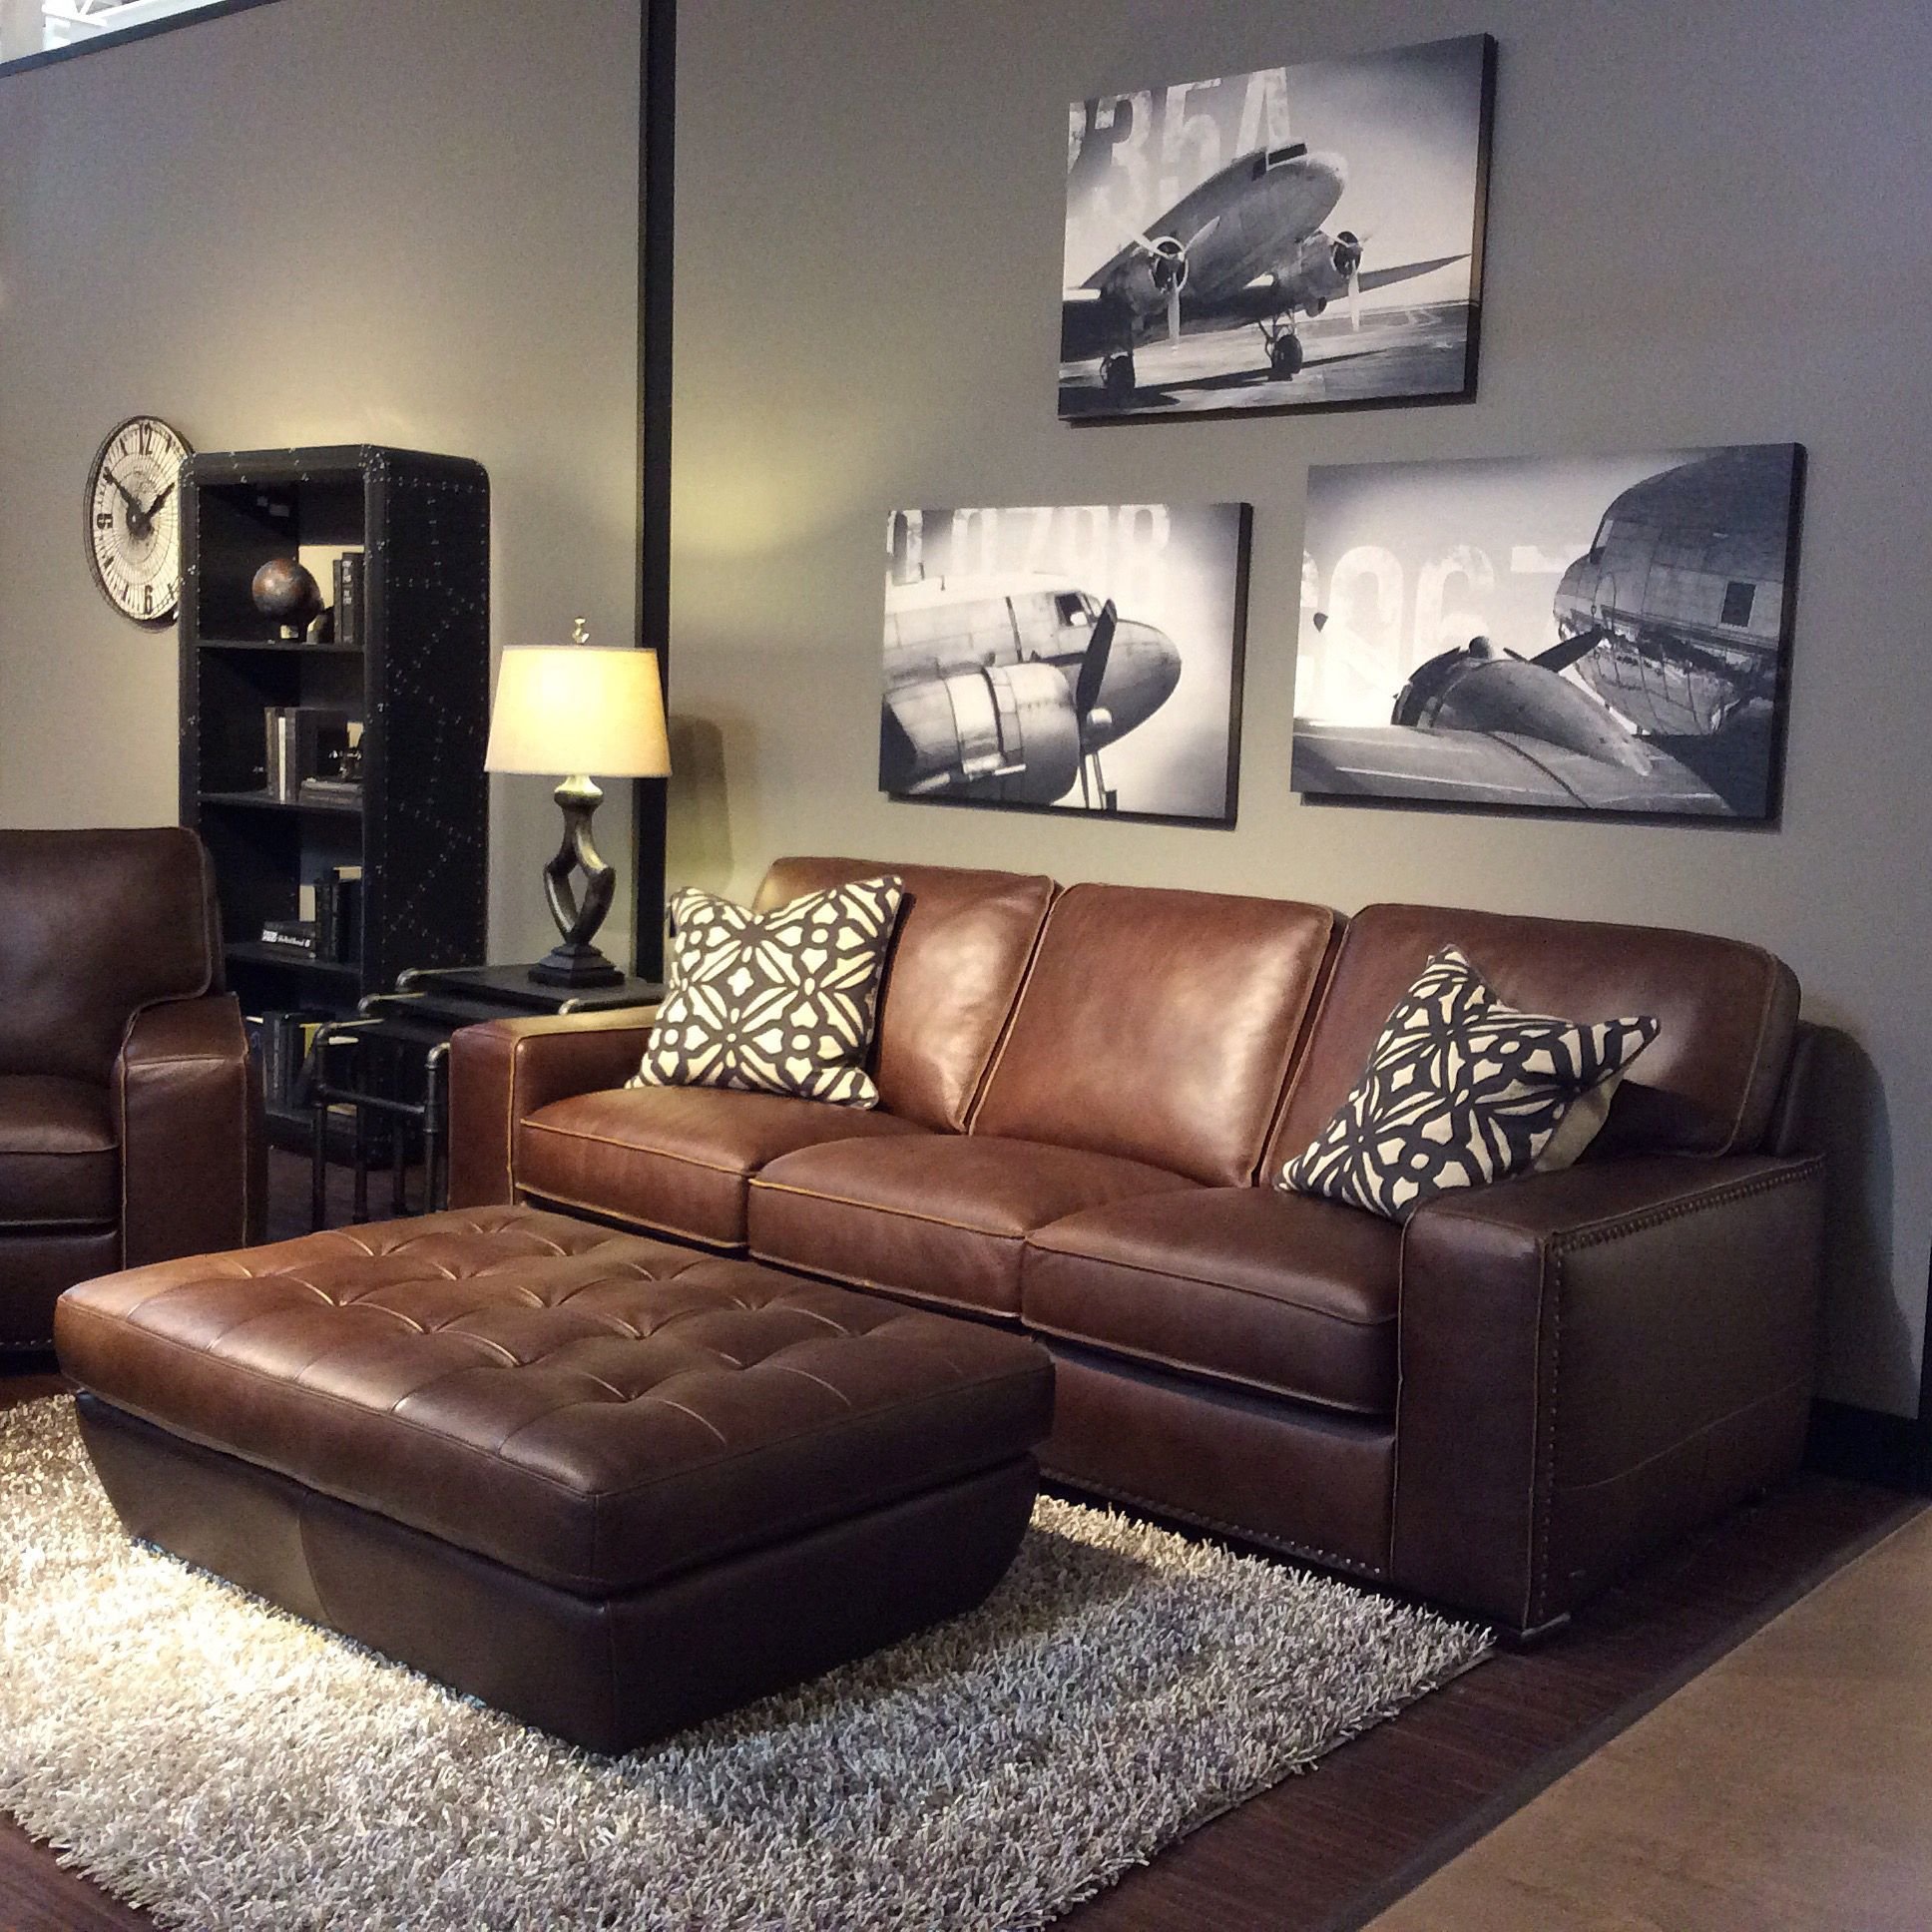 Диван шоколад. Коричневый кожаный диван. Коричневая мягкая мебель в интерьере. Коричневый диван в интерьере. Шоколадный диван в интерьере.